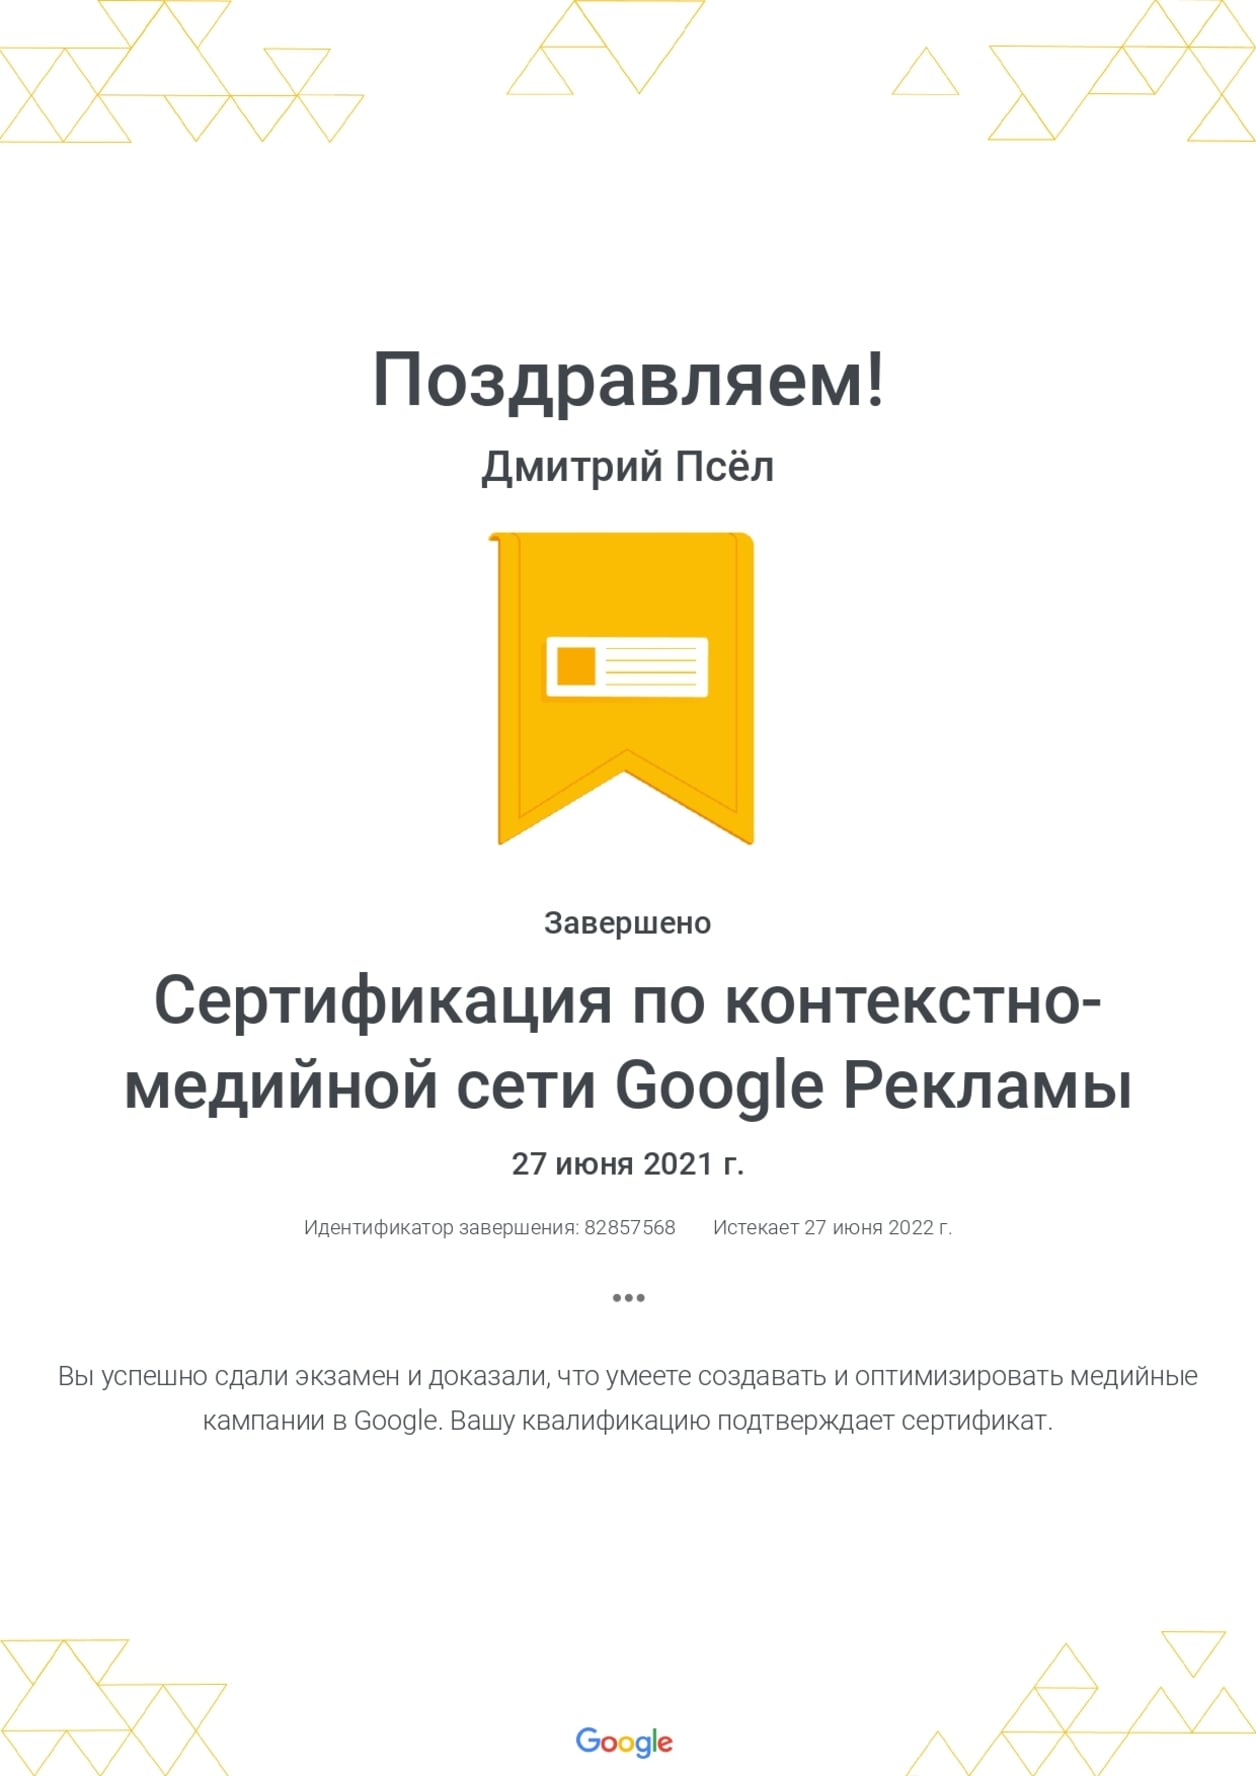 Дмитрий Псёл - сертификат по контекстно-медийной сети Google Рекламы